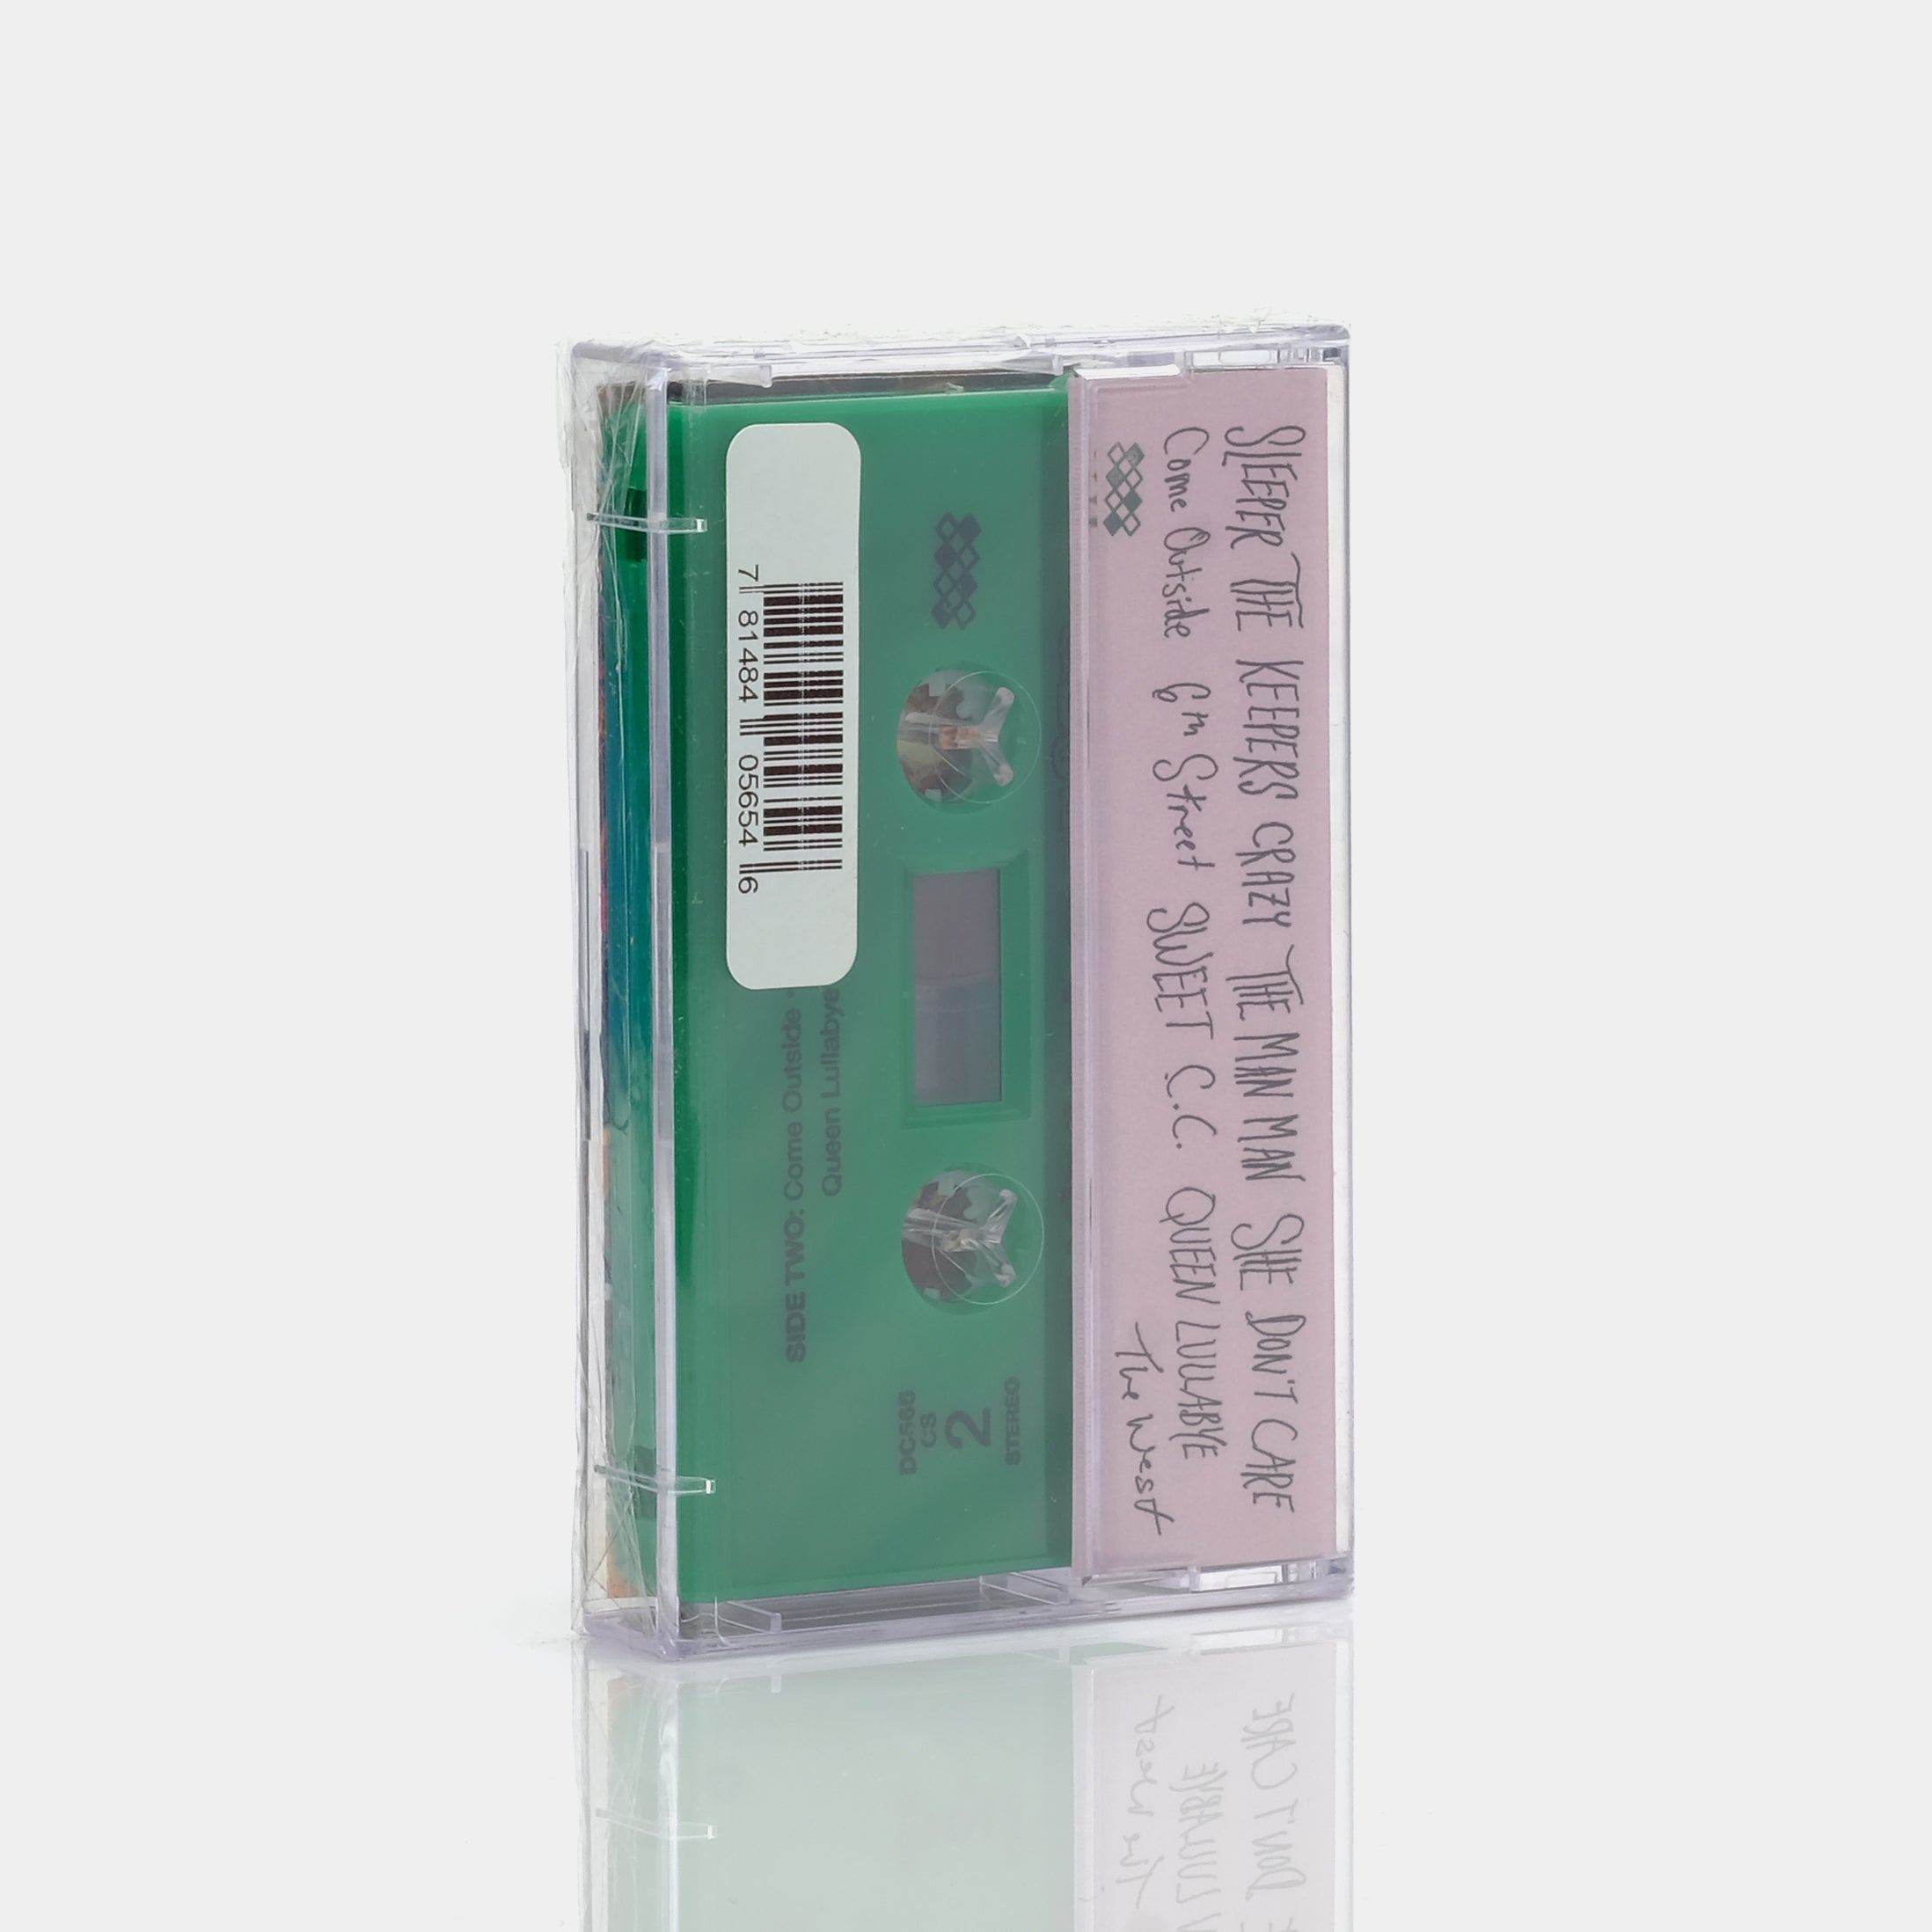 Ty Segall - Sleeper Cassette Tape